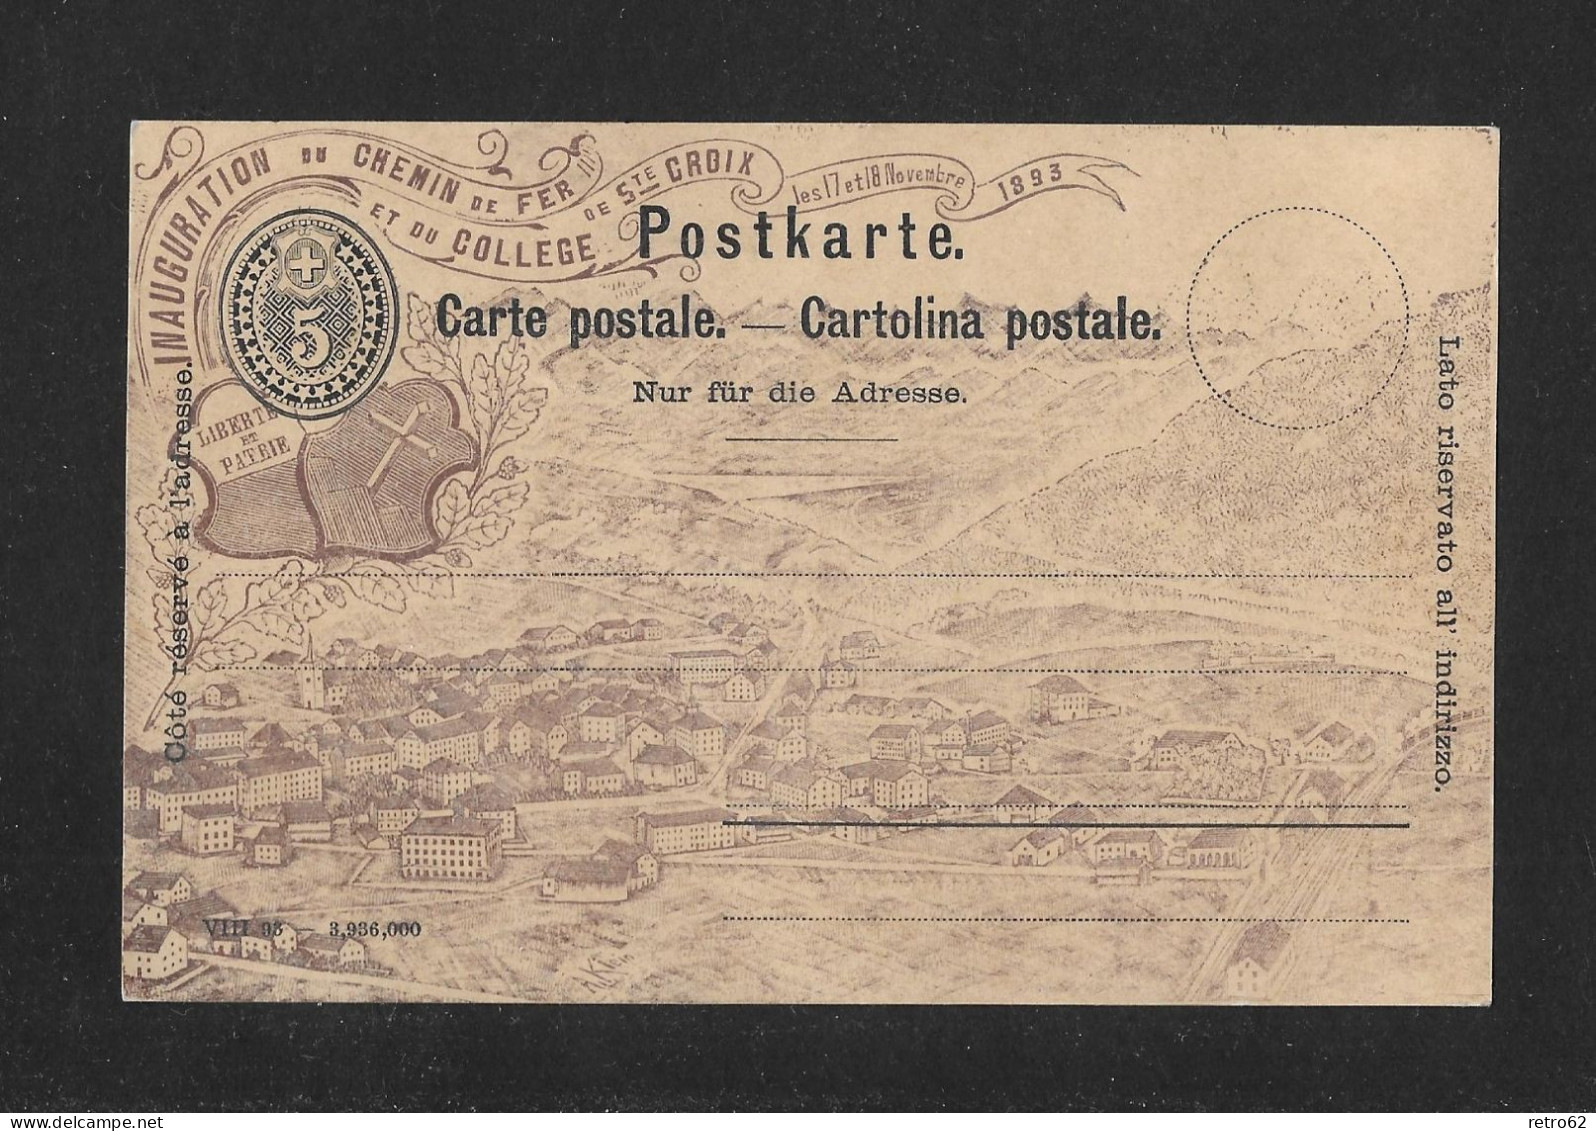 1893 INAUGURATION DU CHEMIN DE FER STE CROIX ► Ungebrauchte Postkarte/Privatganzsache Mit Zudruck Dunkelbraun  ►RAR◄ - Ganzsachen